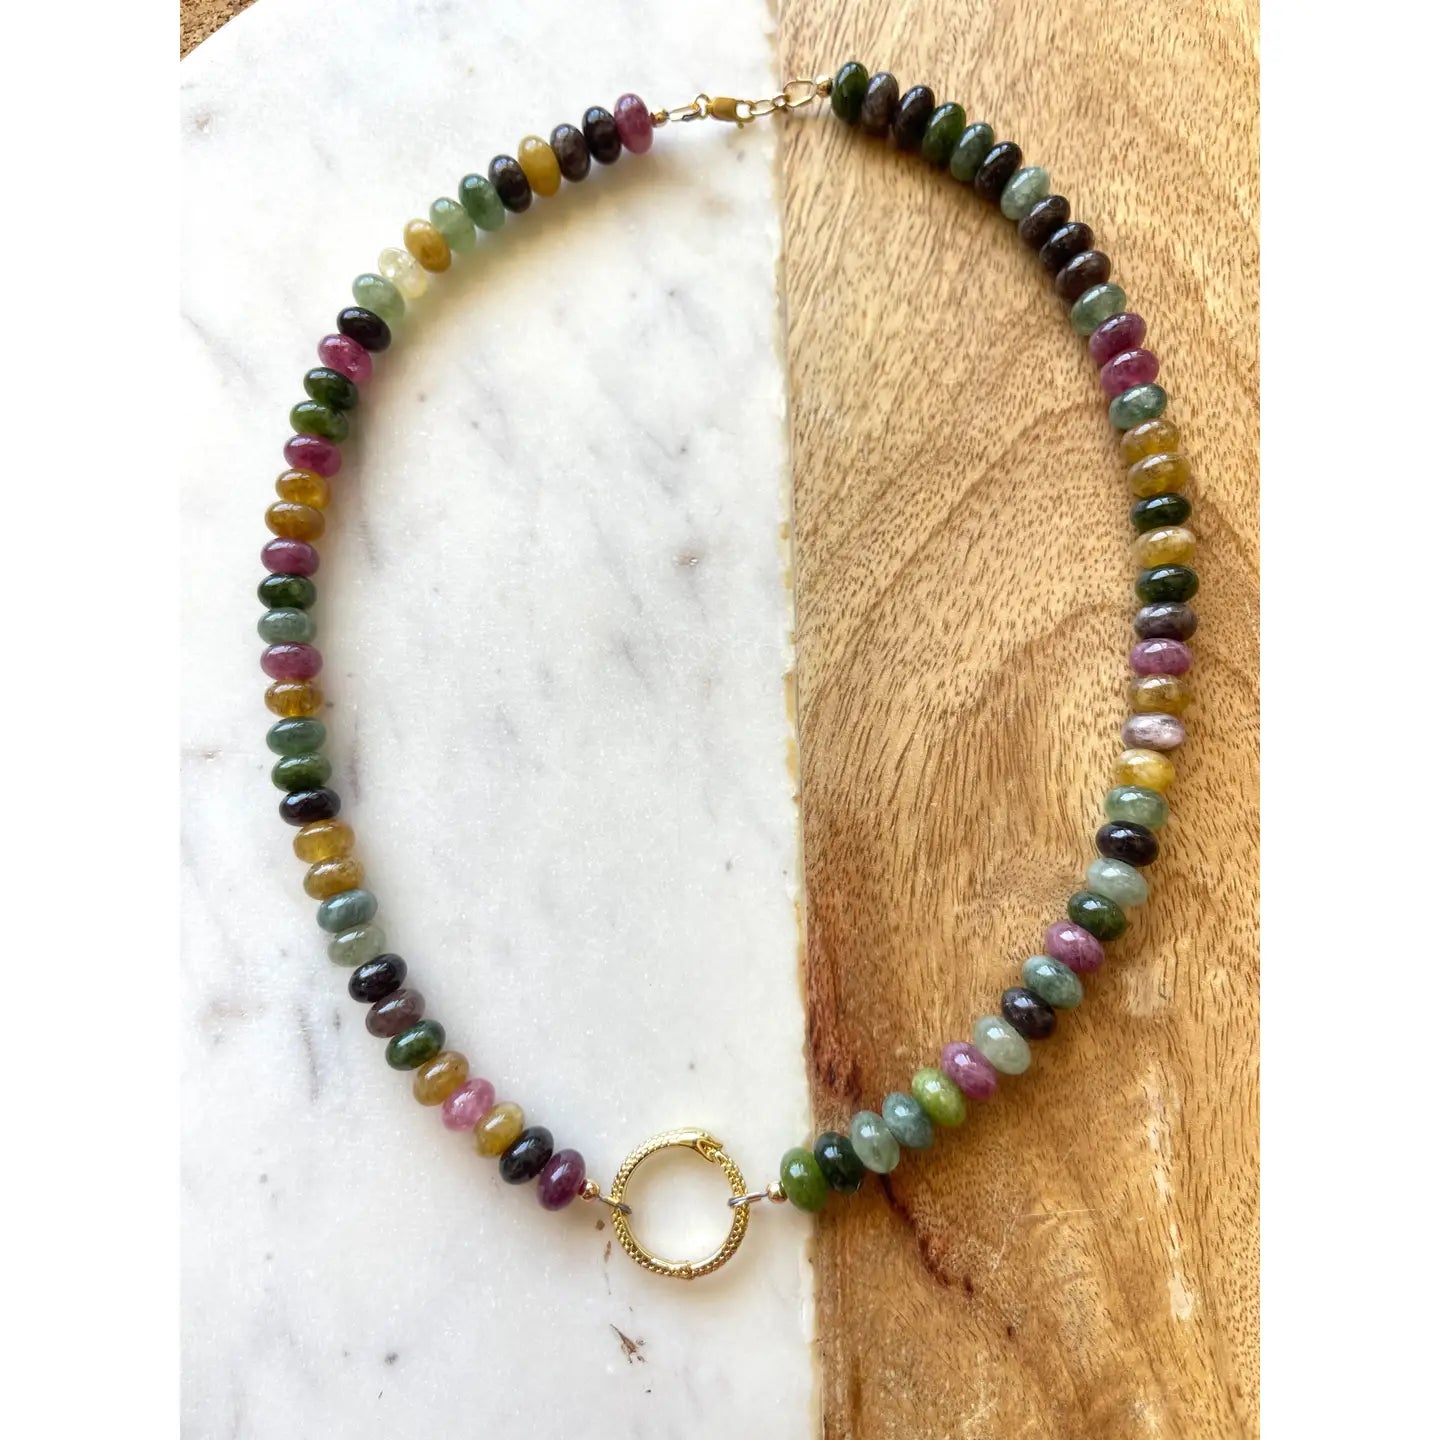 The Kiah Necklace by Jessica Matrasko Jewelry